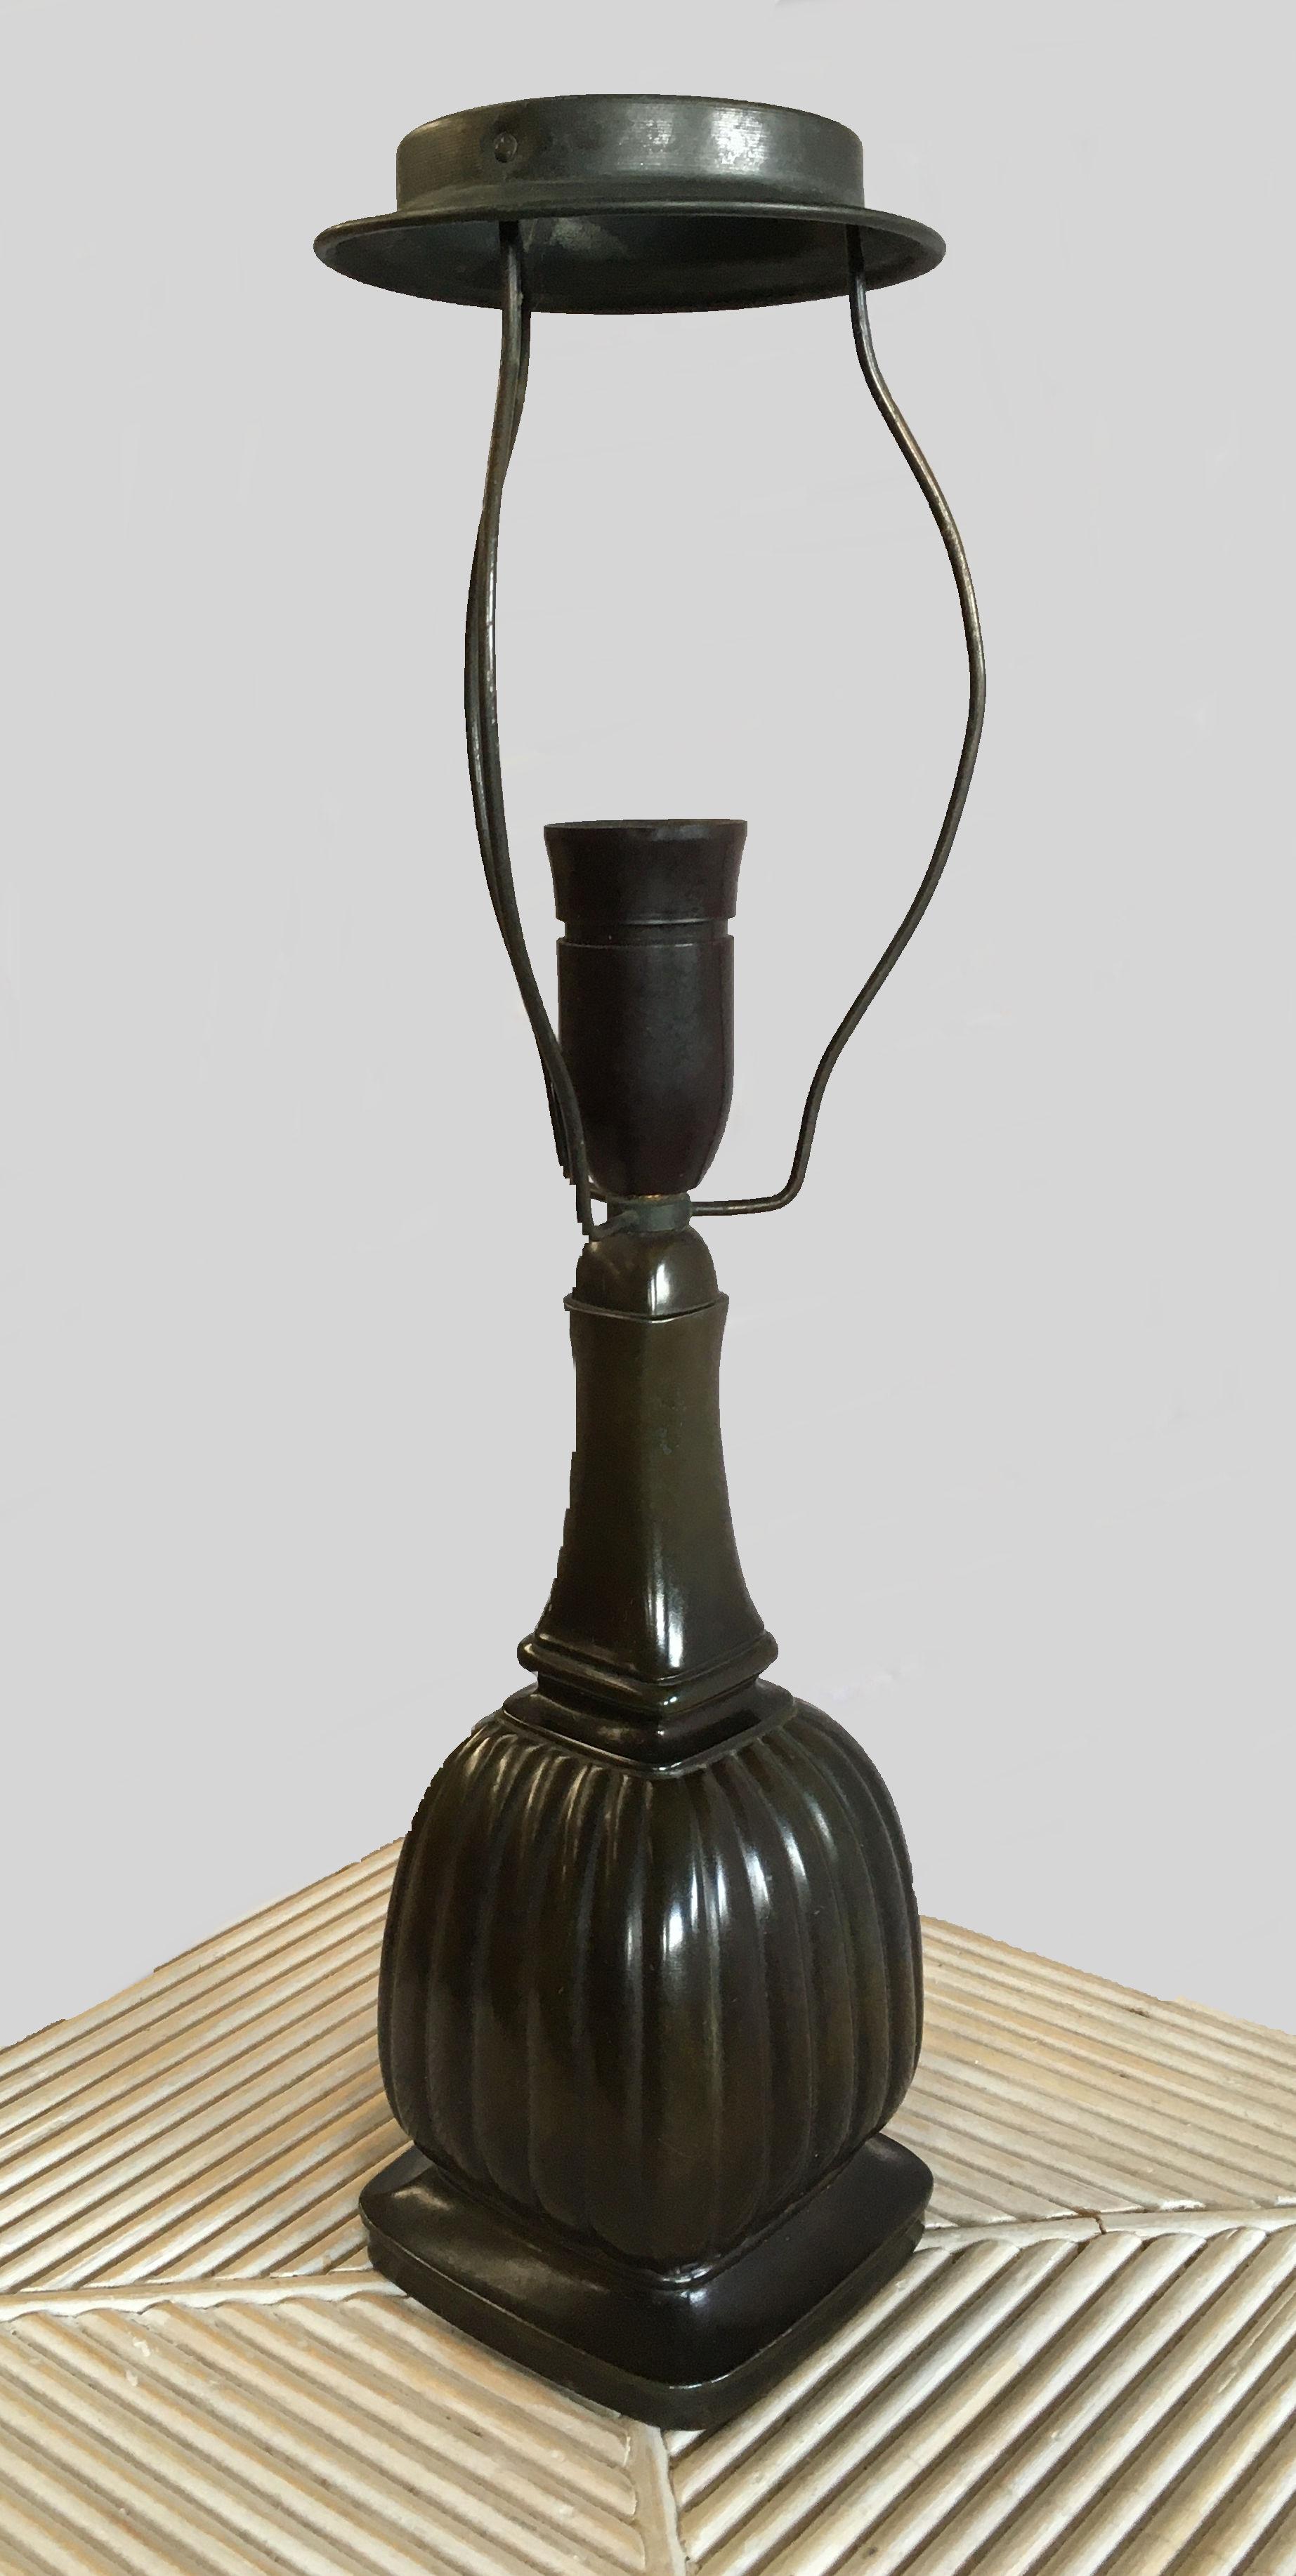 Lampe de table art déco danoise Just Andersen en métal disco par Just Andersen A/S dans les années 1930.

La lampe de table est fabriquée en métal Disco, un alliage de plomb et d'antimoine, qui est une invention personnelle d'Andersen et qui doit